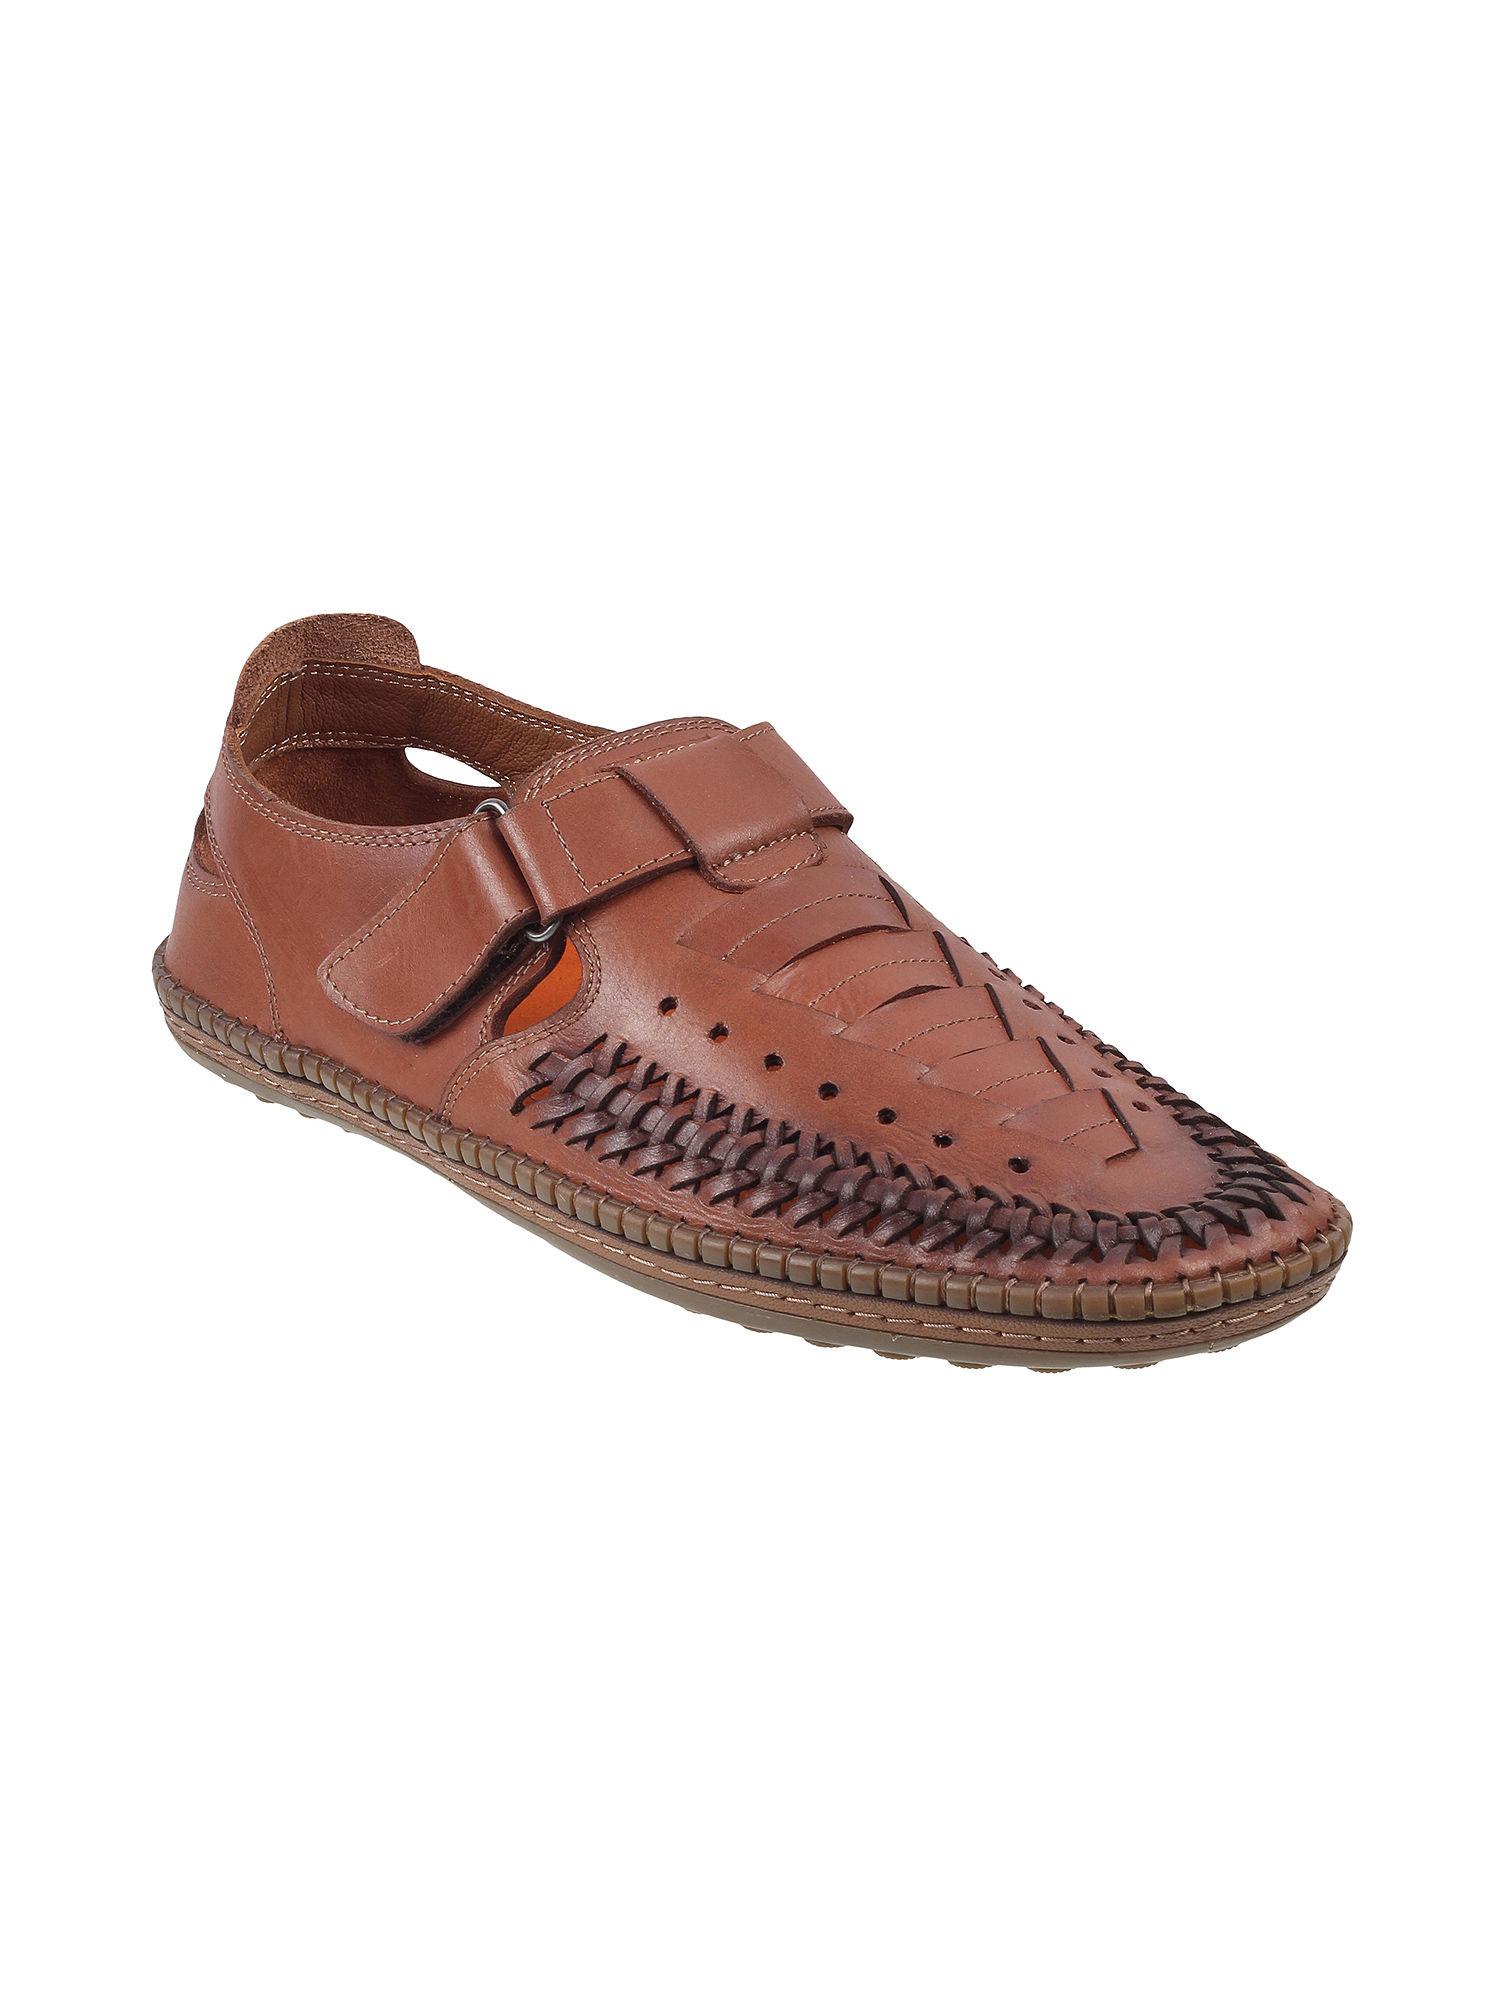 men-tan-leather-sandals